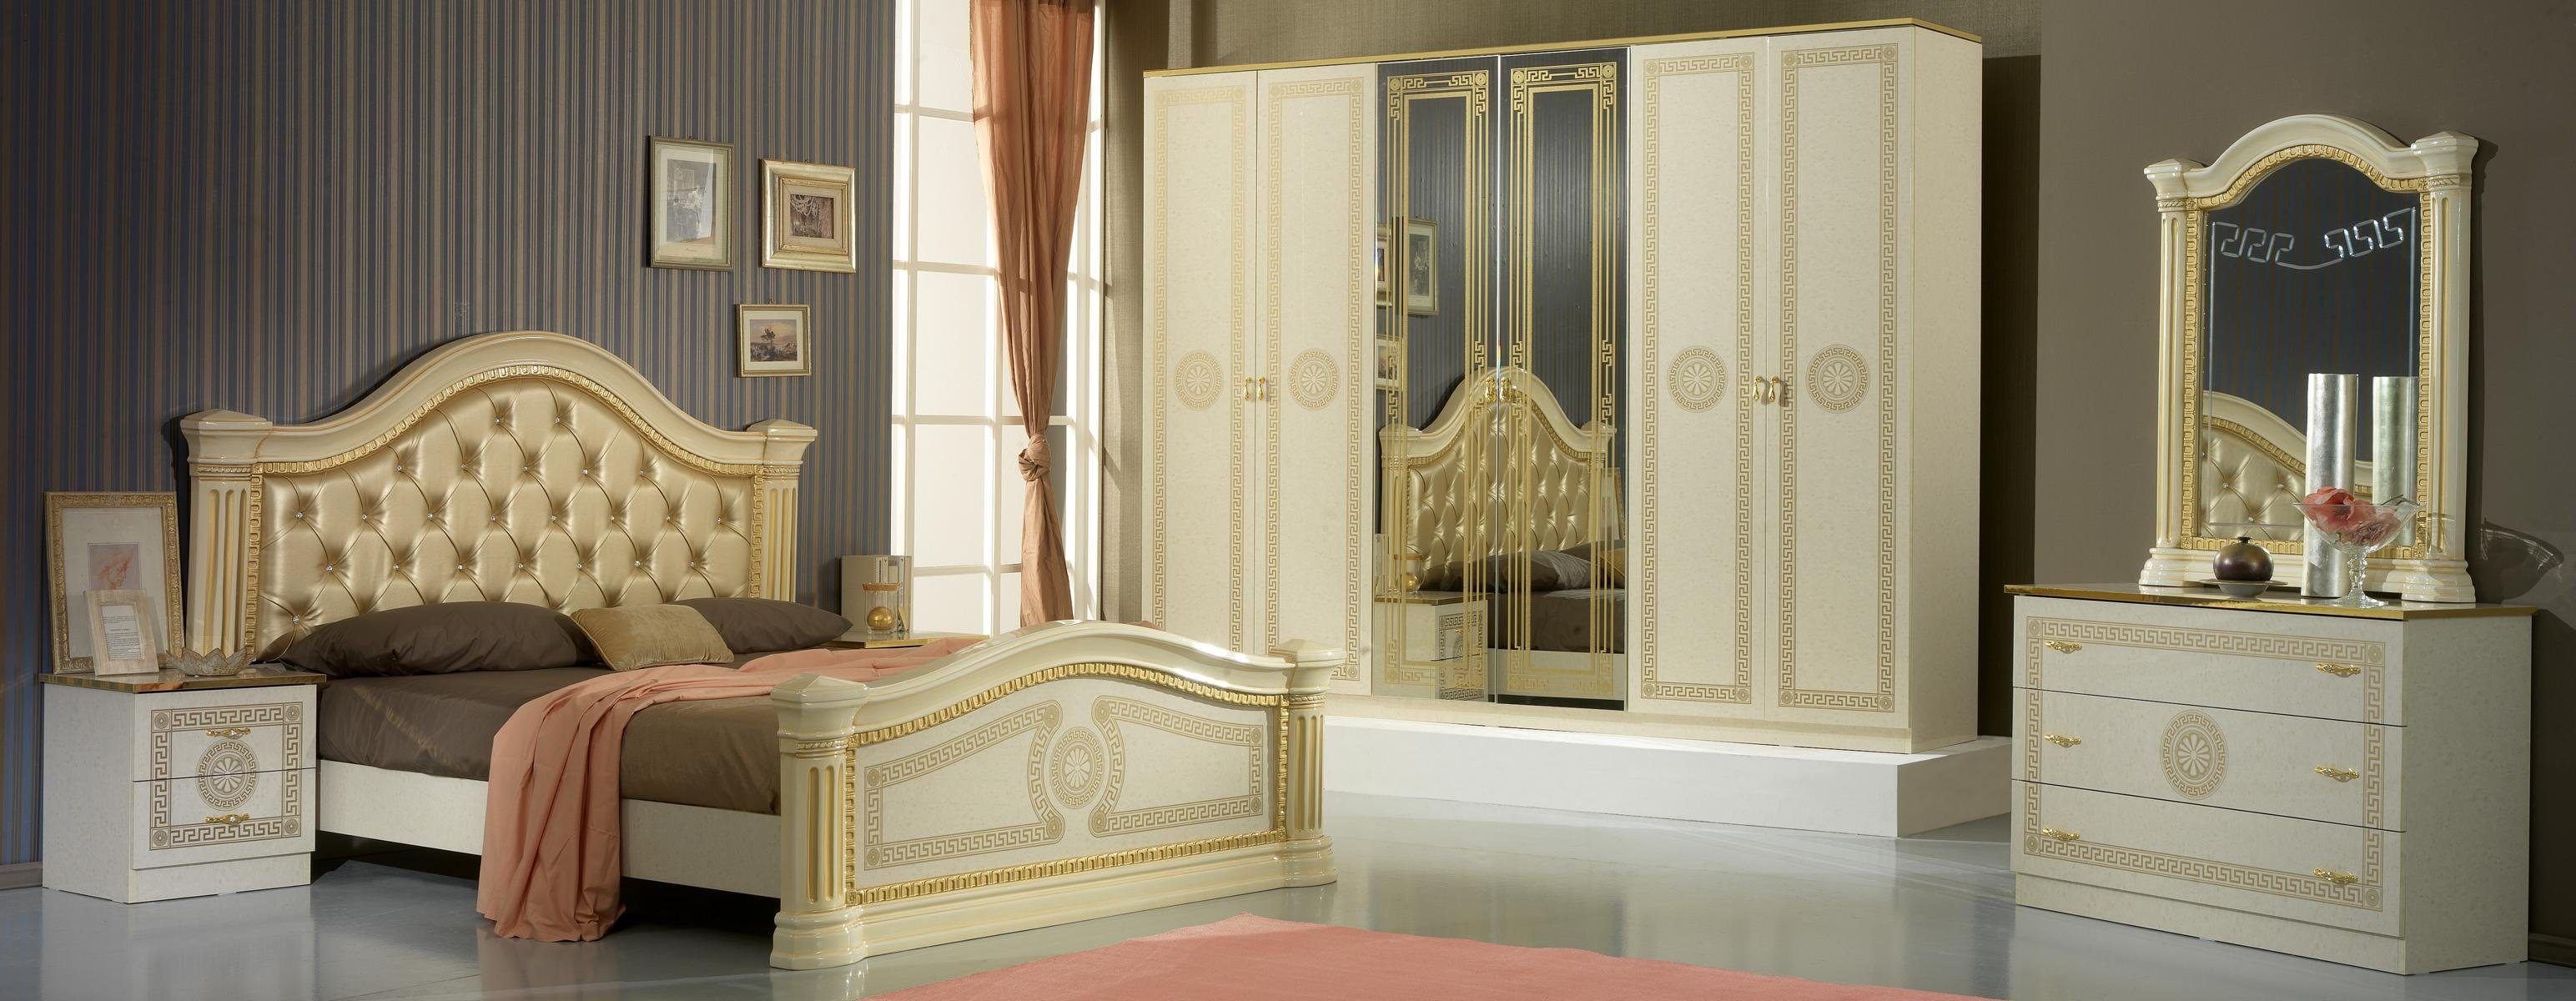 Klassischer Luxus 3tlg. JVmoebel Bett Luxus 2x Betten Nachttisch Schlafzimmer Schlafzimmer-Set